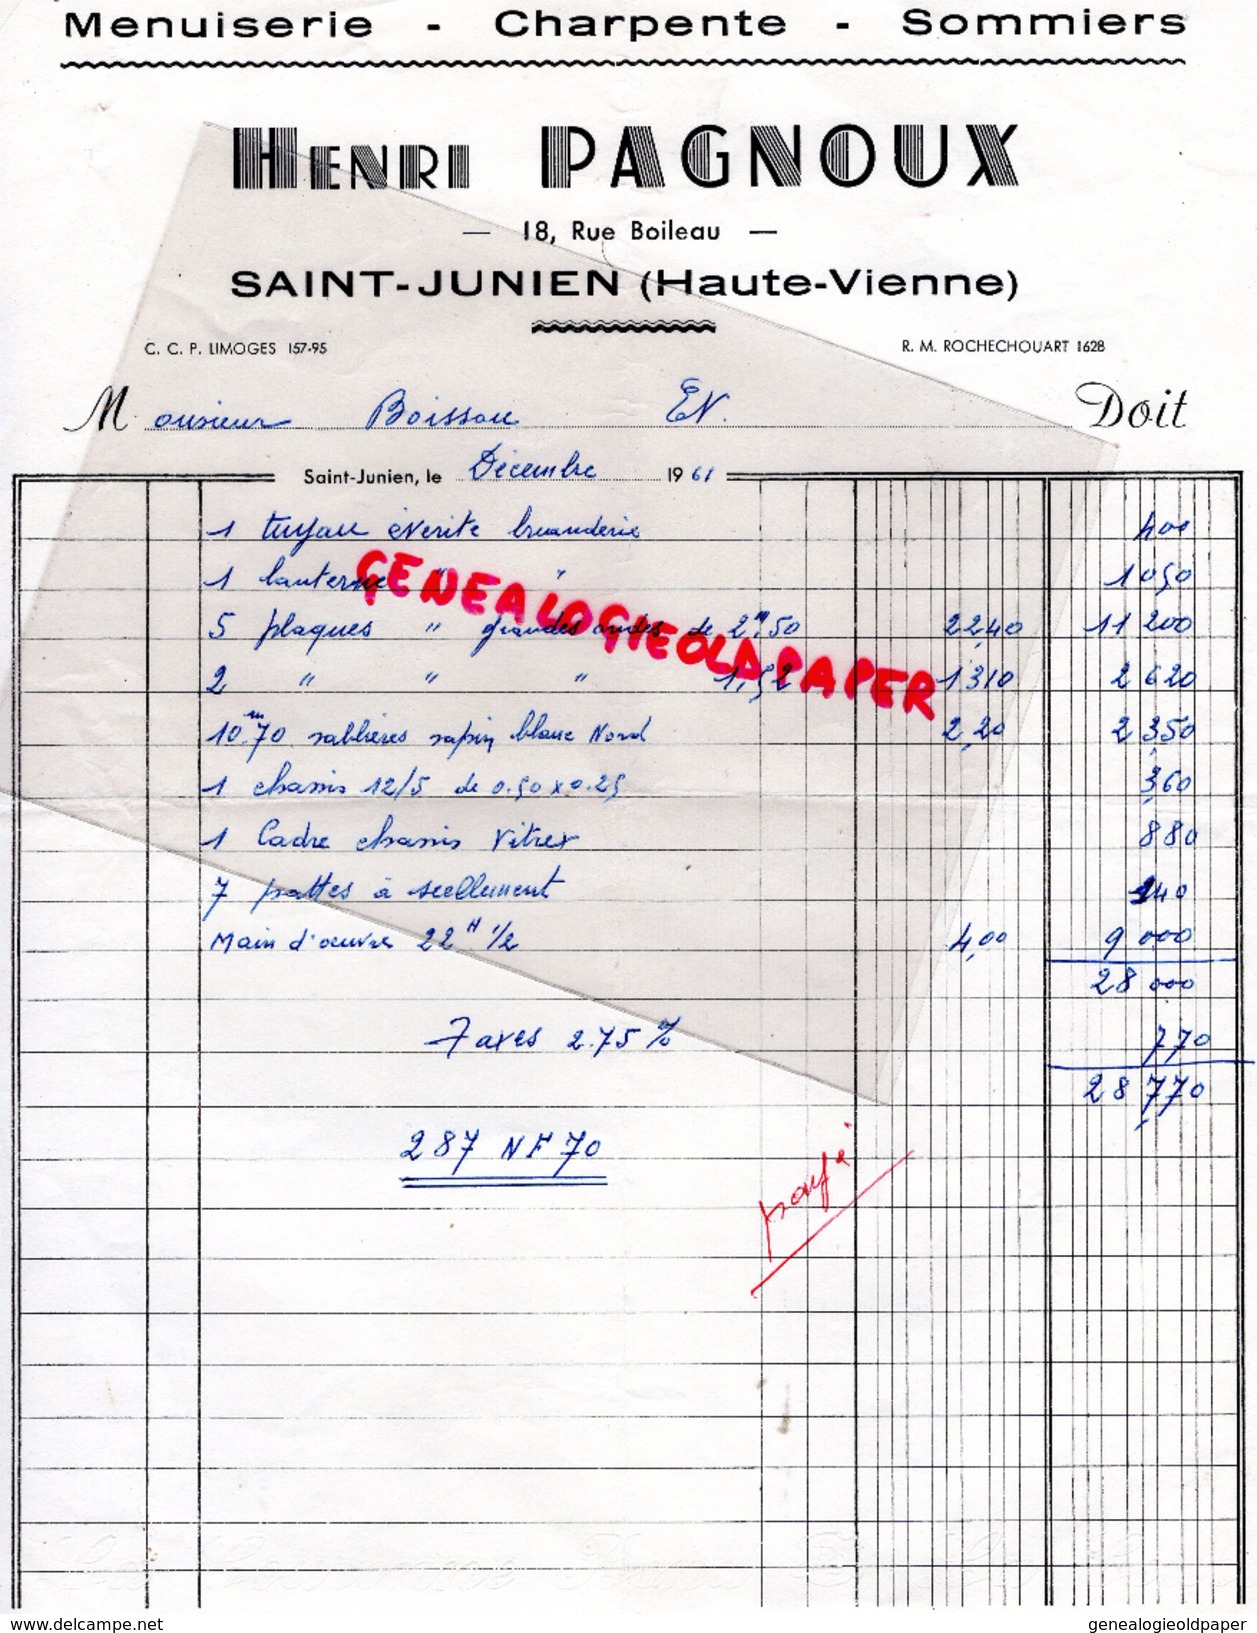 87 - SAINT JUNIEN- FACTURE HENRI PAGNOUX- MENUISERIE CHARPENTE SOMMIERS- 18 RUE BOILEAU- 1961 - 1950 - ...